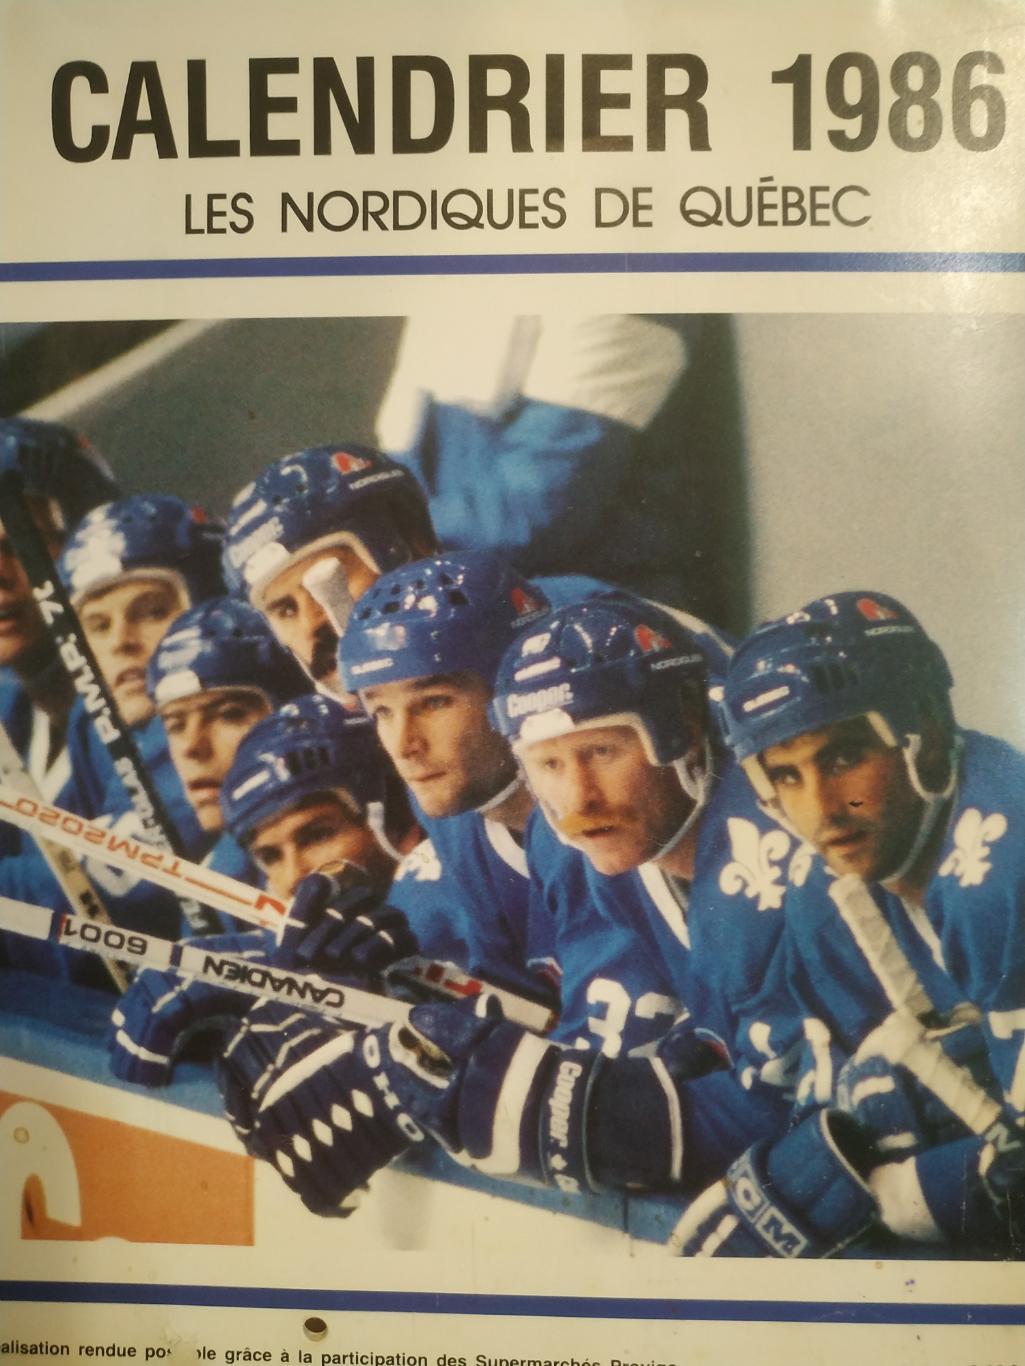 ХОККЕЙ КАЛЕНДАРЬ НХЛ КВЕБЕК НОРДИКС 1986 NHL LES NORDIQUES OFFICIAL CALENDAR